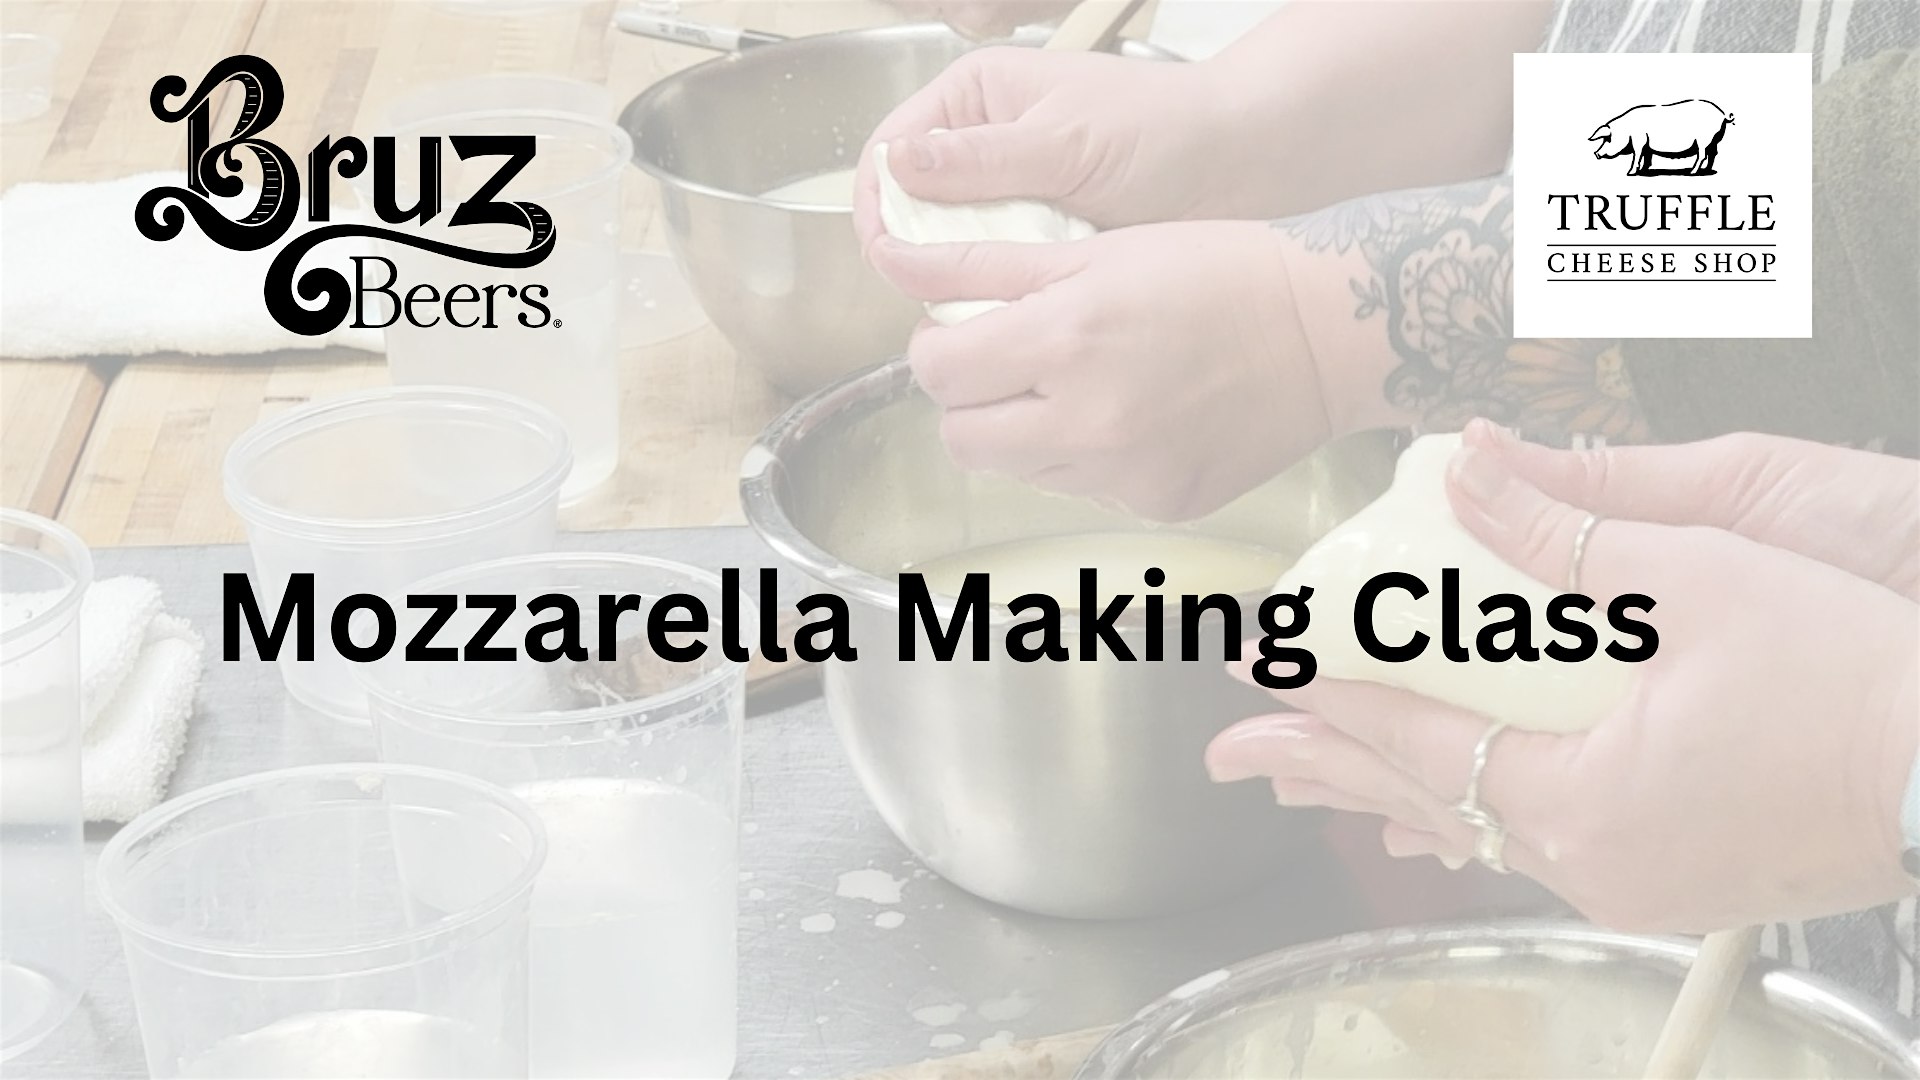 Mozzarella Making Class at Bruz Off Fax